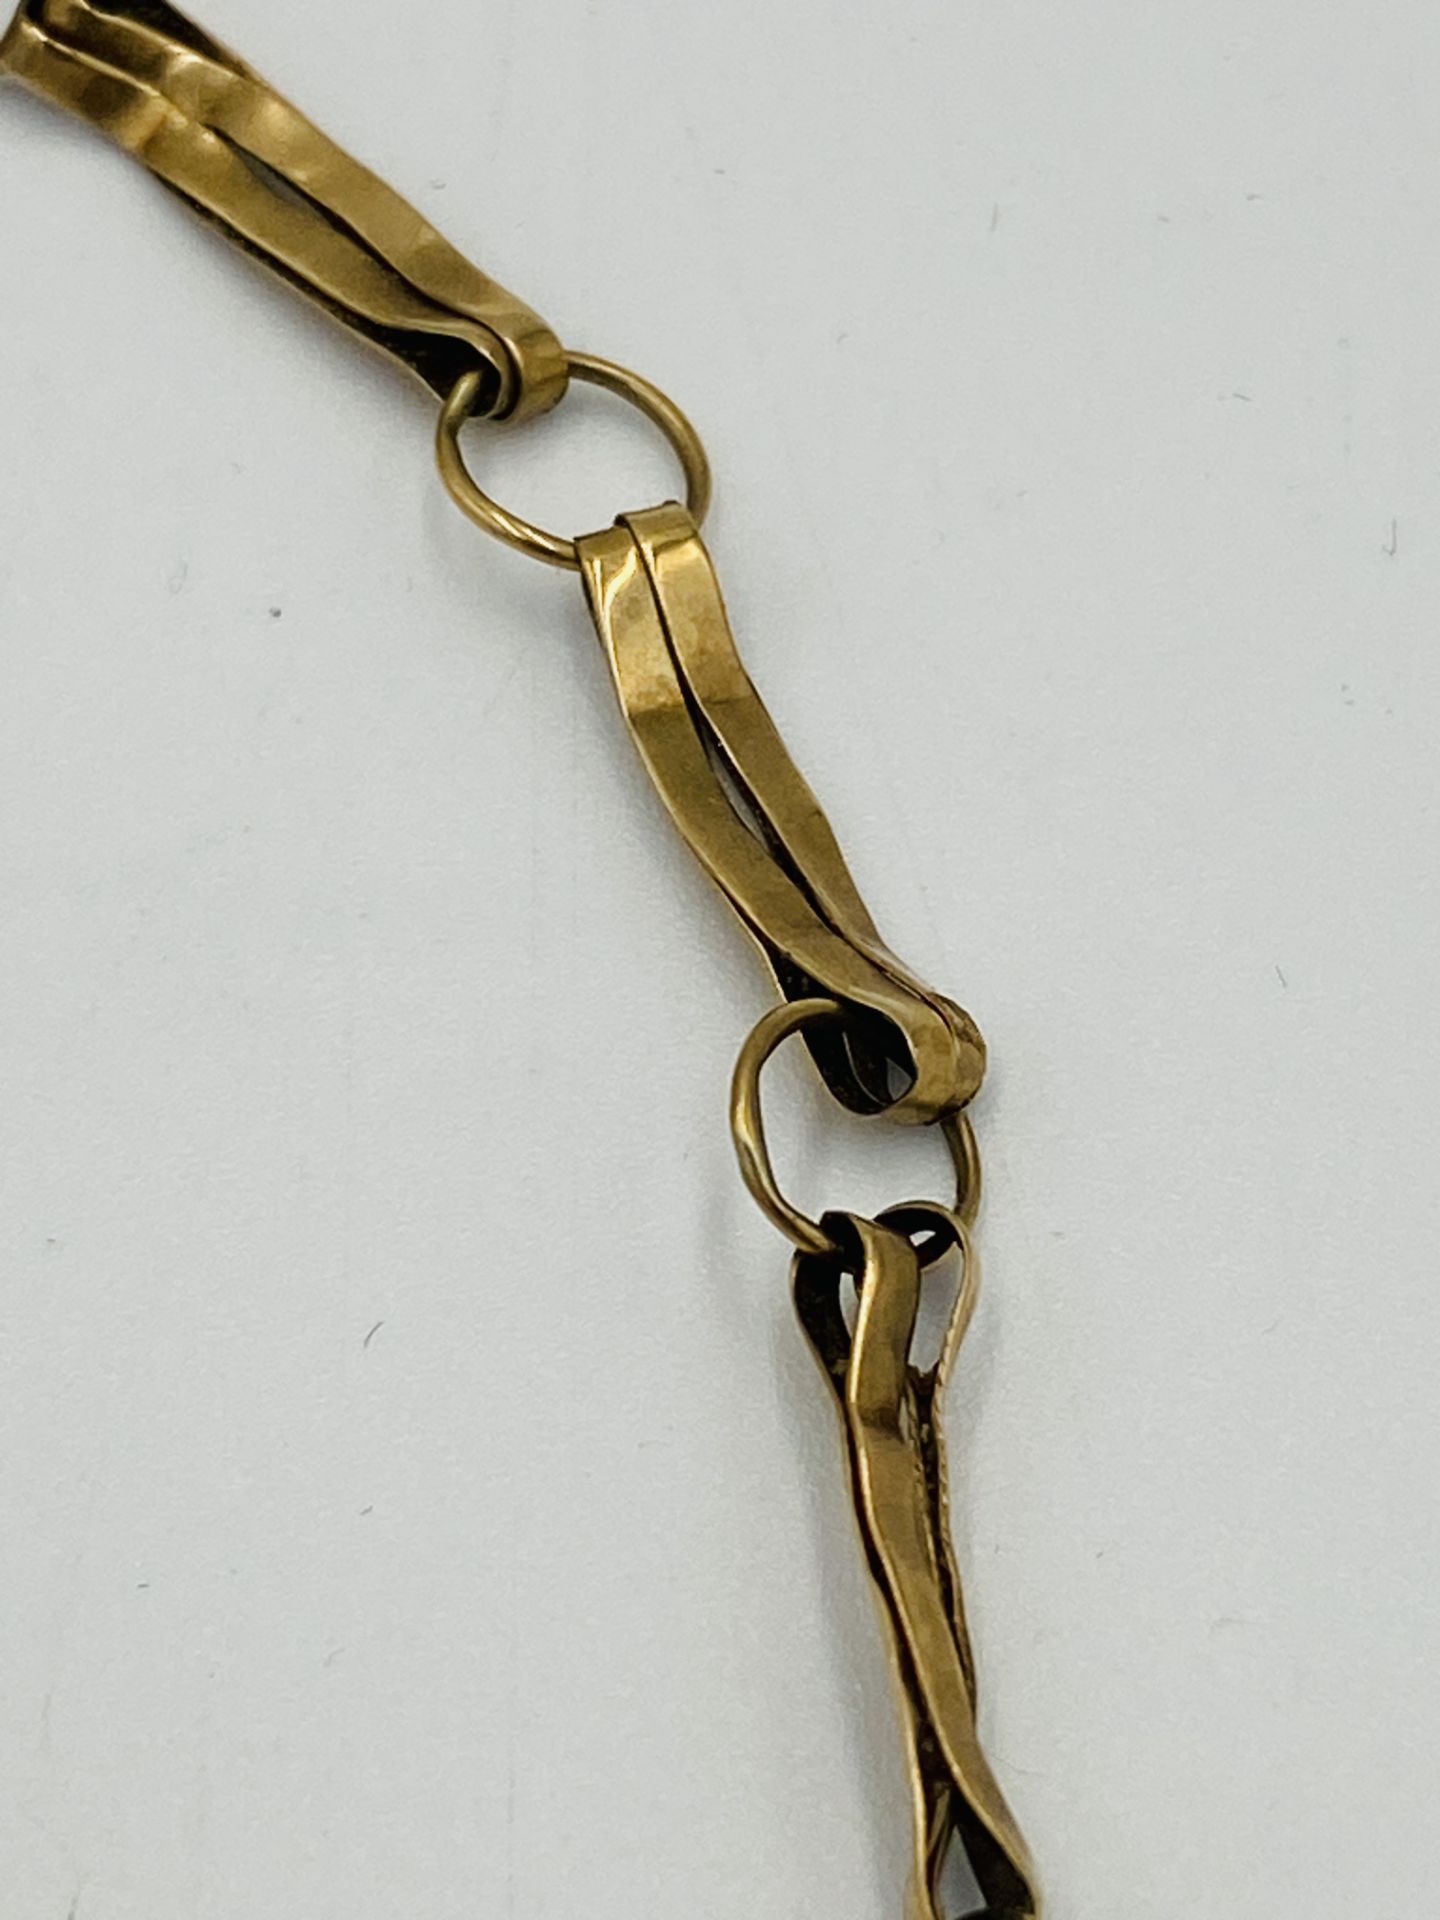 9ct gold bracelet - Image 2 of 4